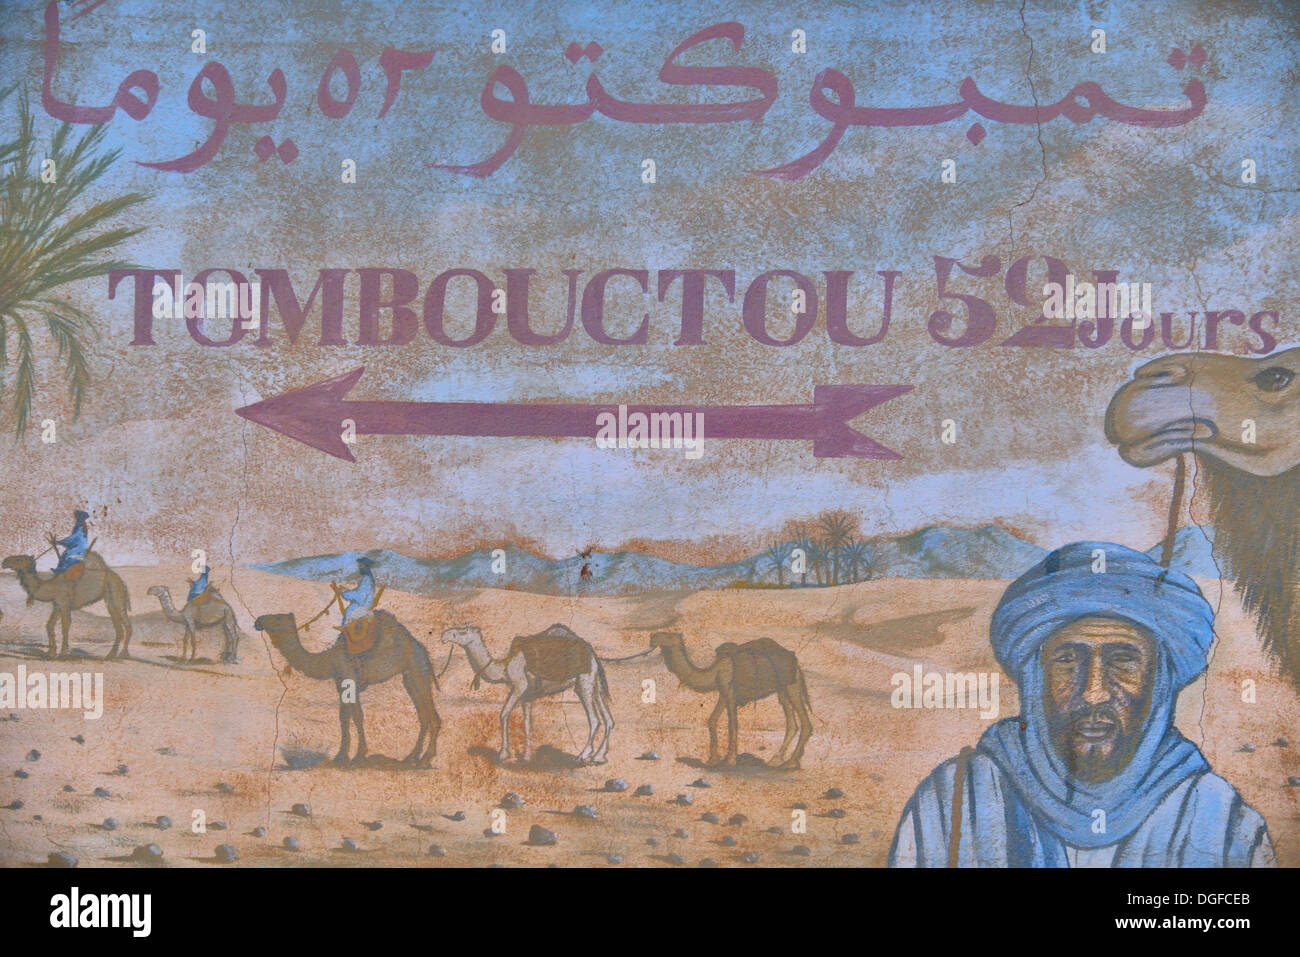 Anmeldung "Tombouctou 52 Jours", "52 Tage nach Timbuktu", Zagora, Souss-Massa-Draâ Region, Marokko Stockfoto